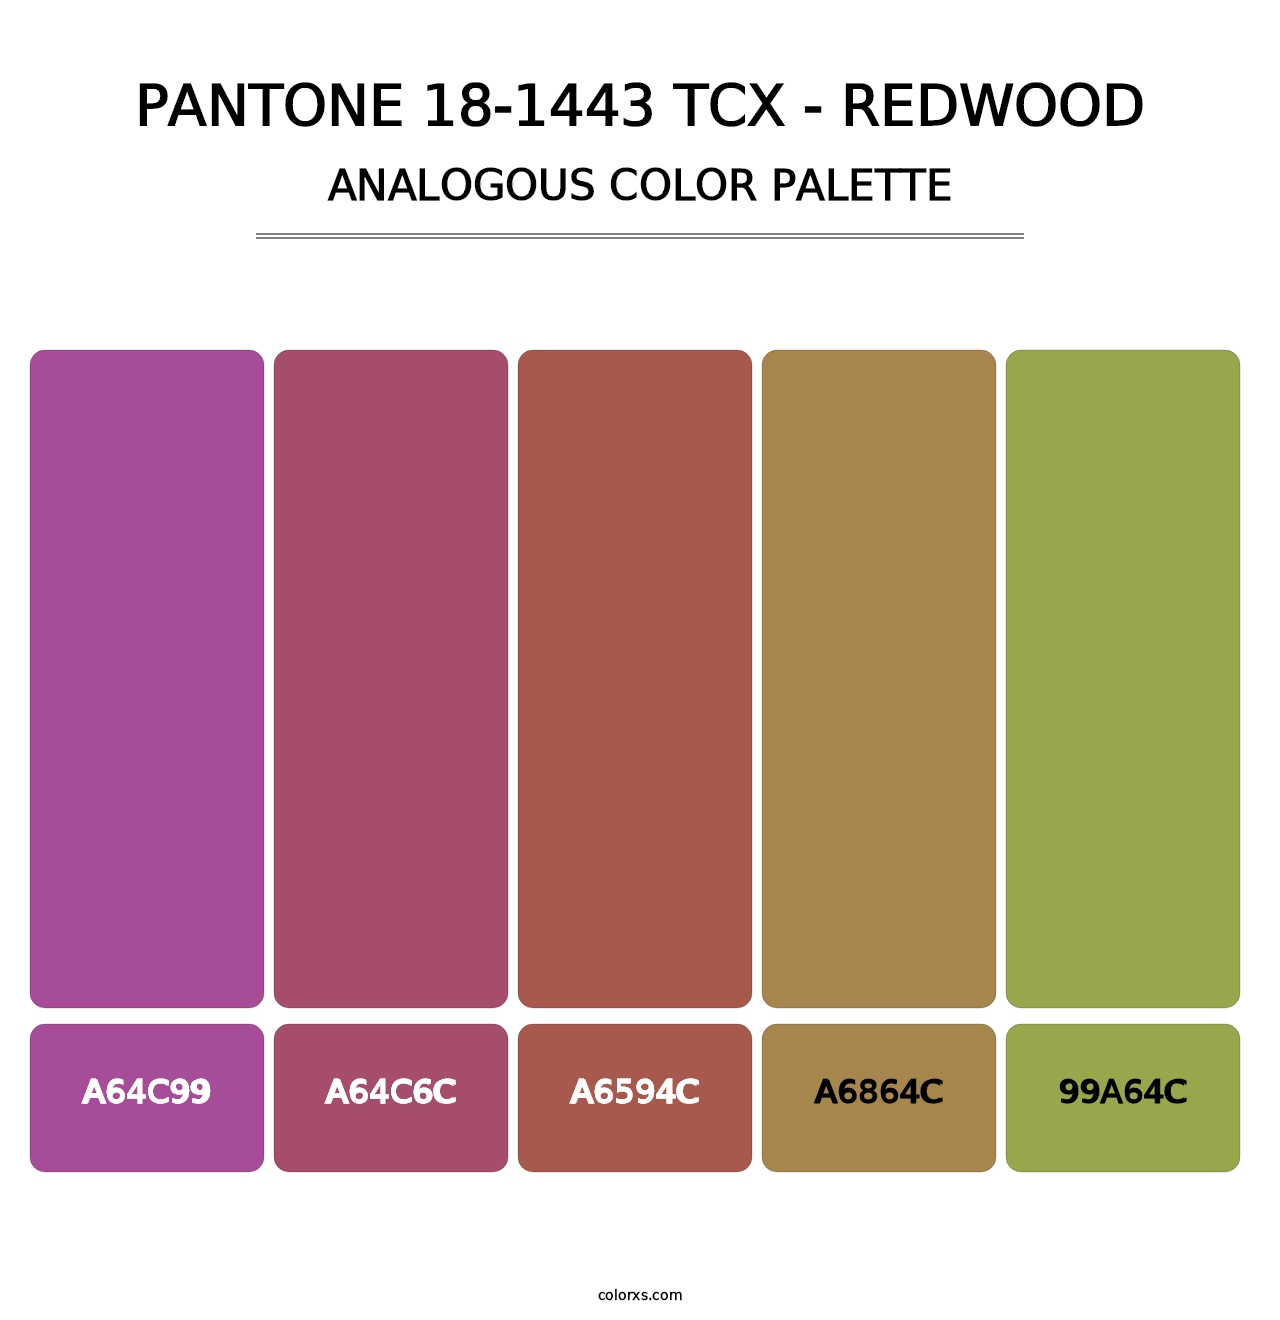 PANTONE 18-1443 TCX - Redwood - Analogous Color Palette